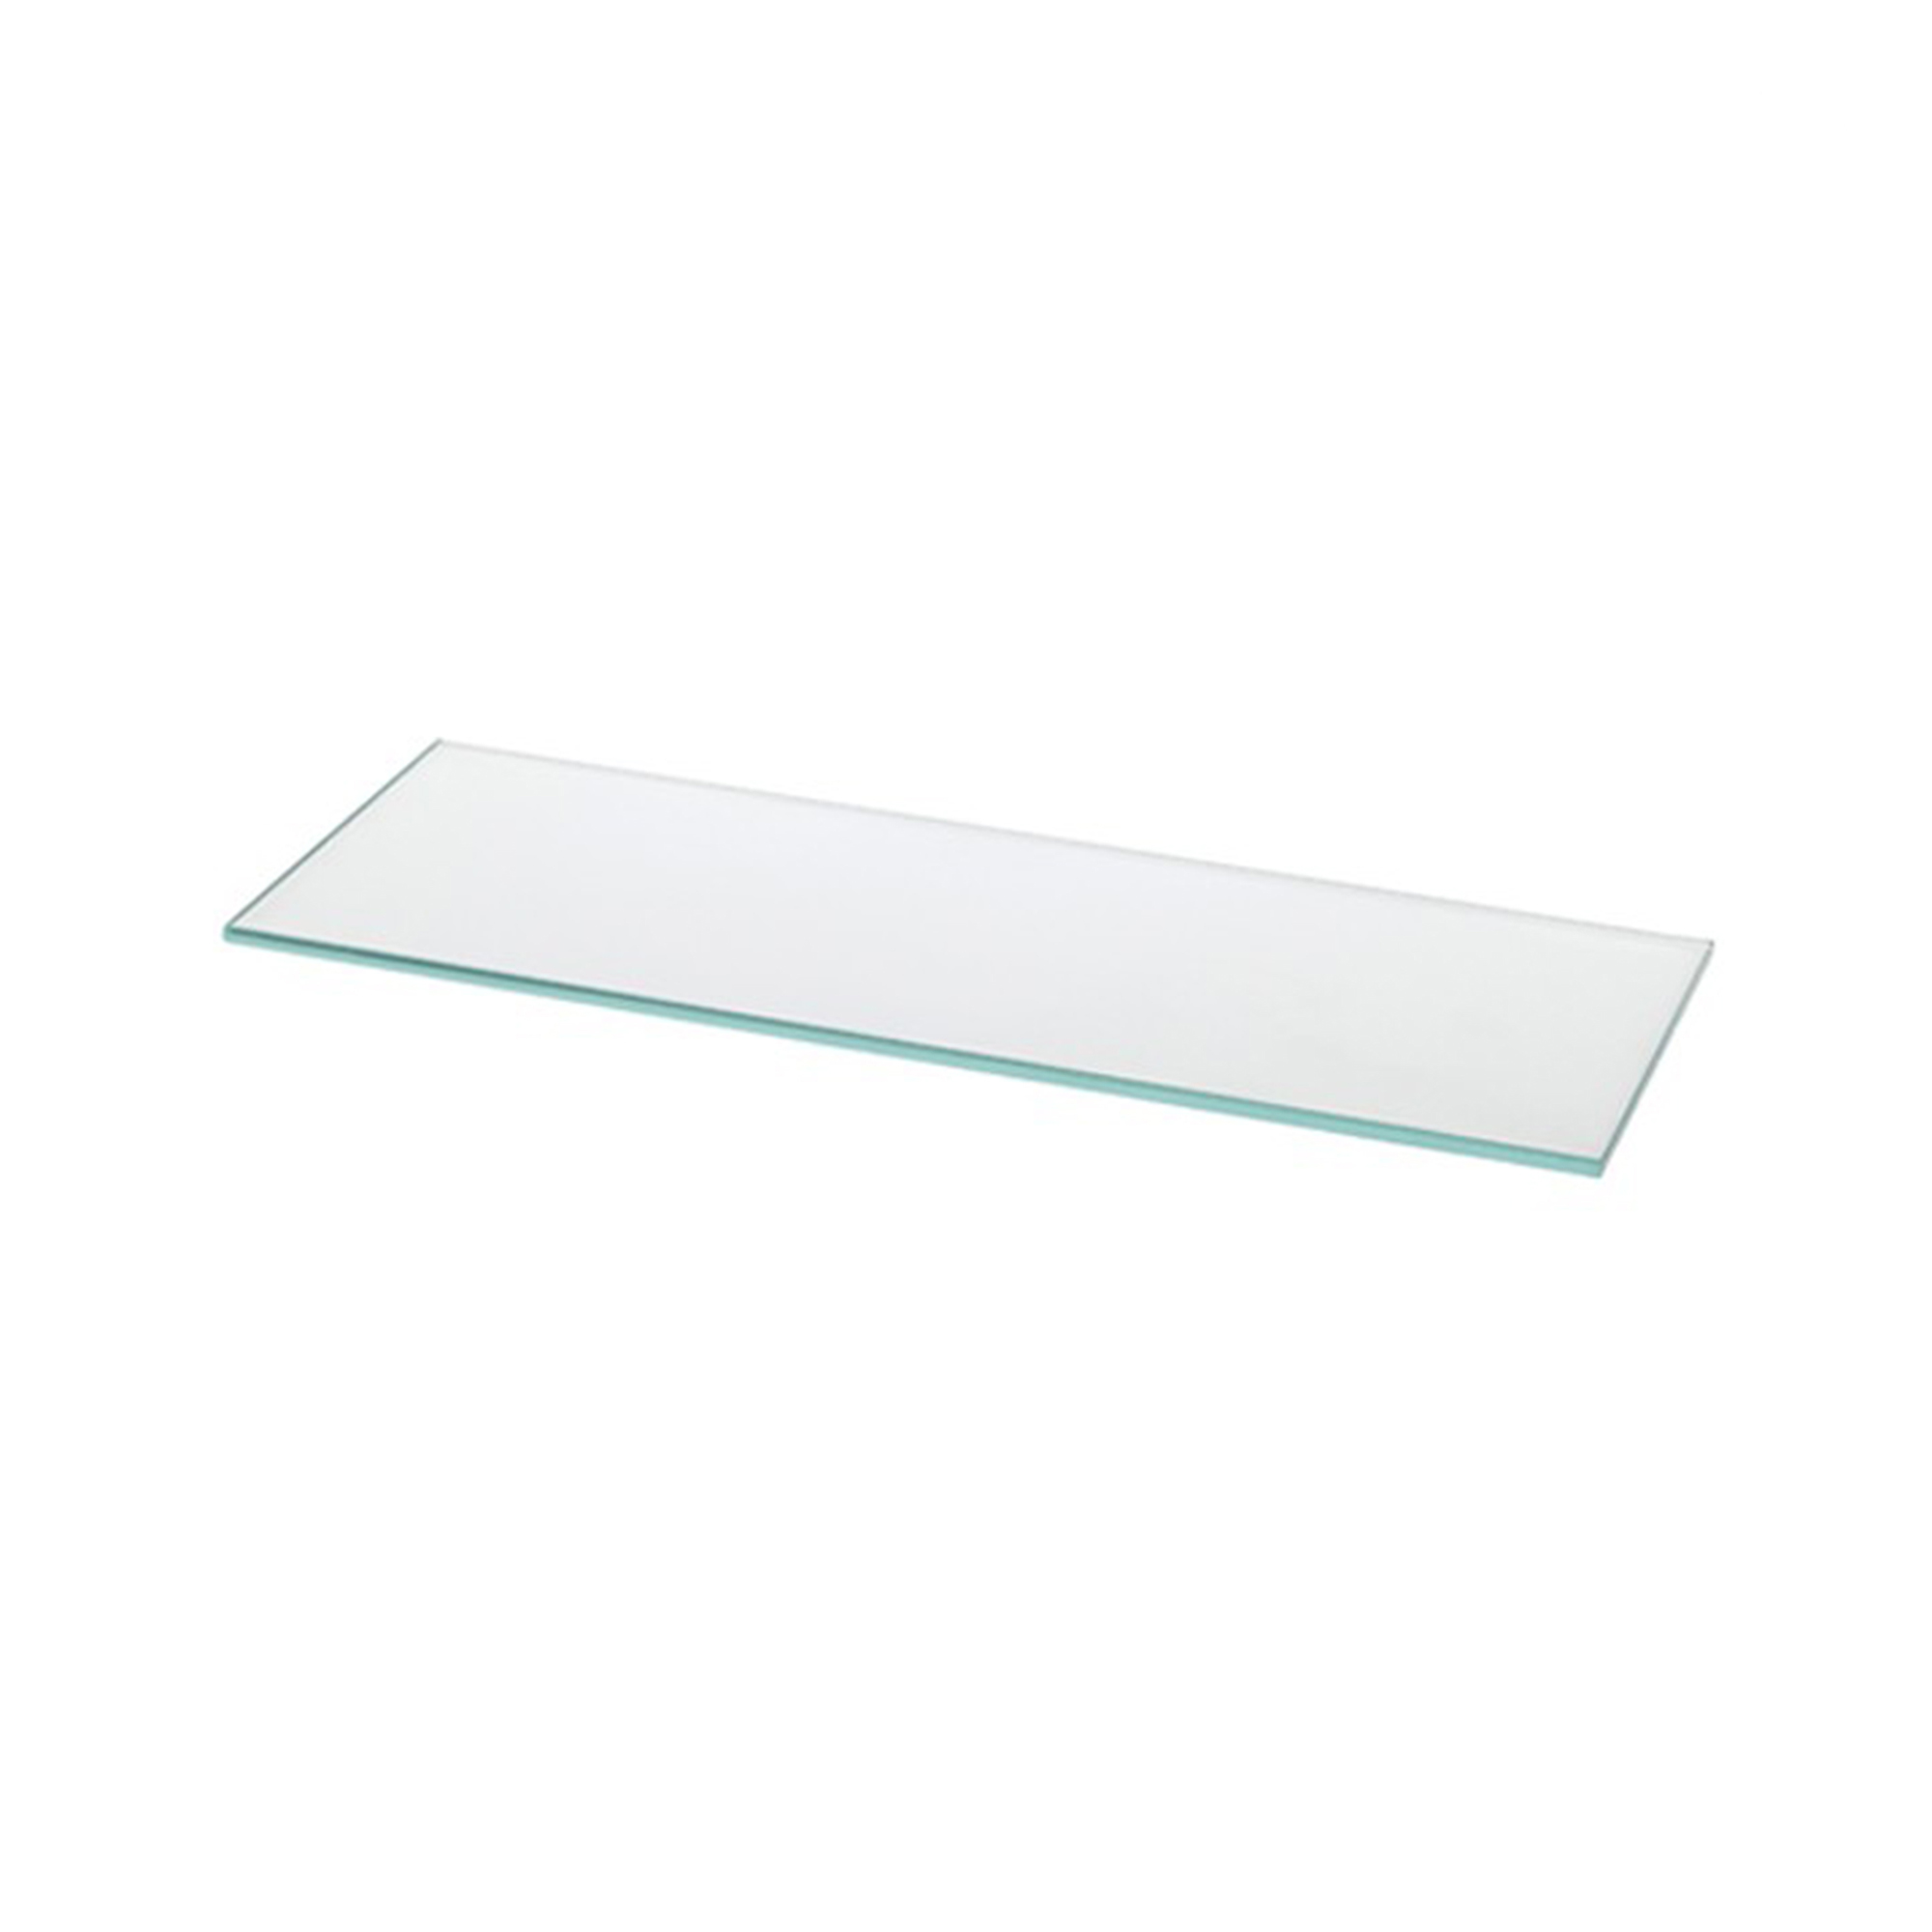 Estante de Cristal Rectangular Transparente | Medidas 700*6*200 mm | Espesor de la Balda: 6 mm | 1 Unidad